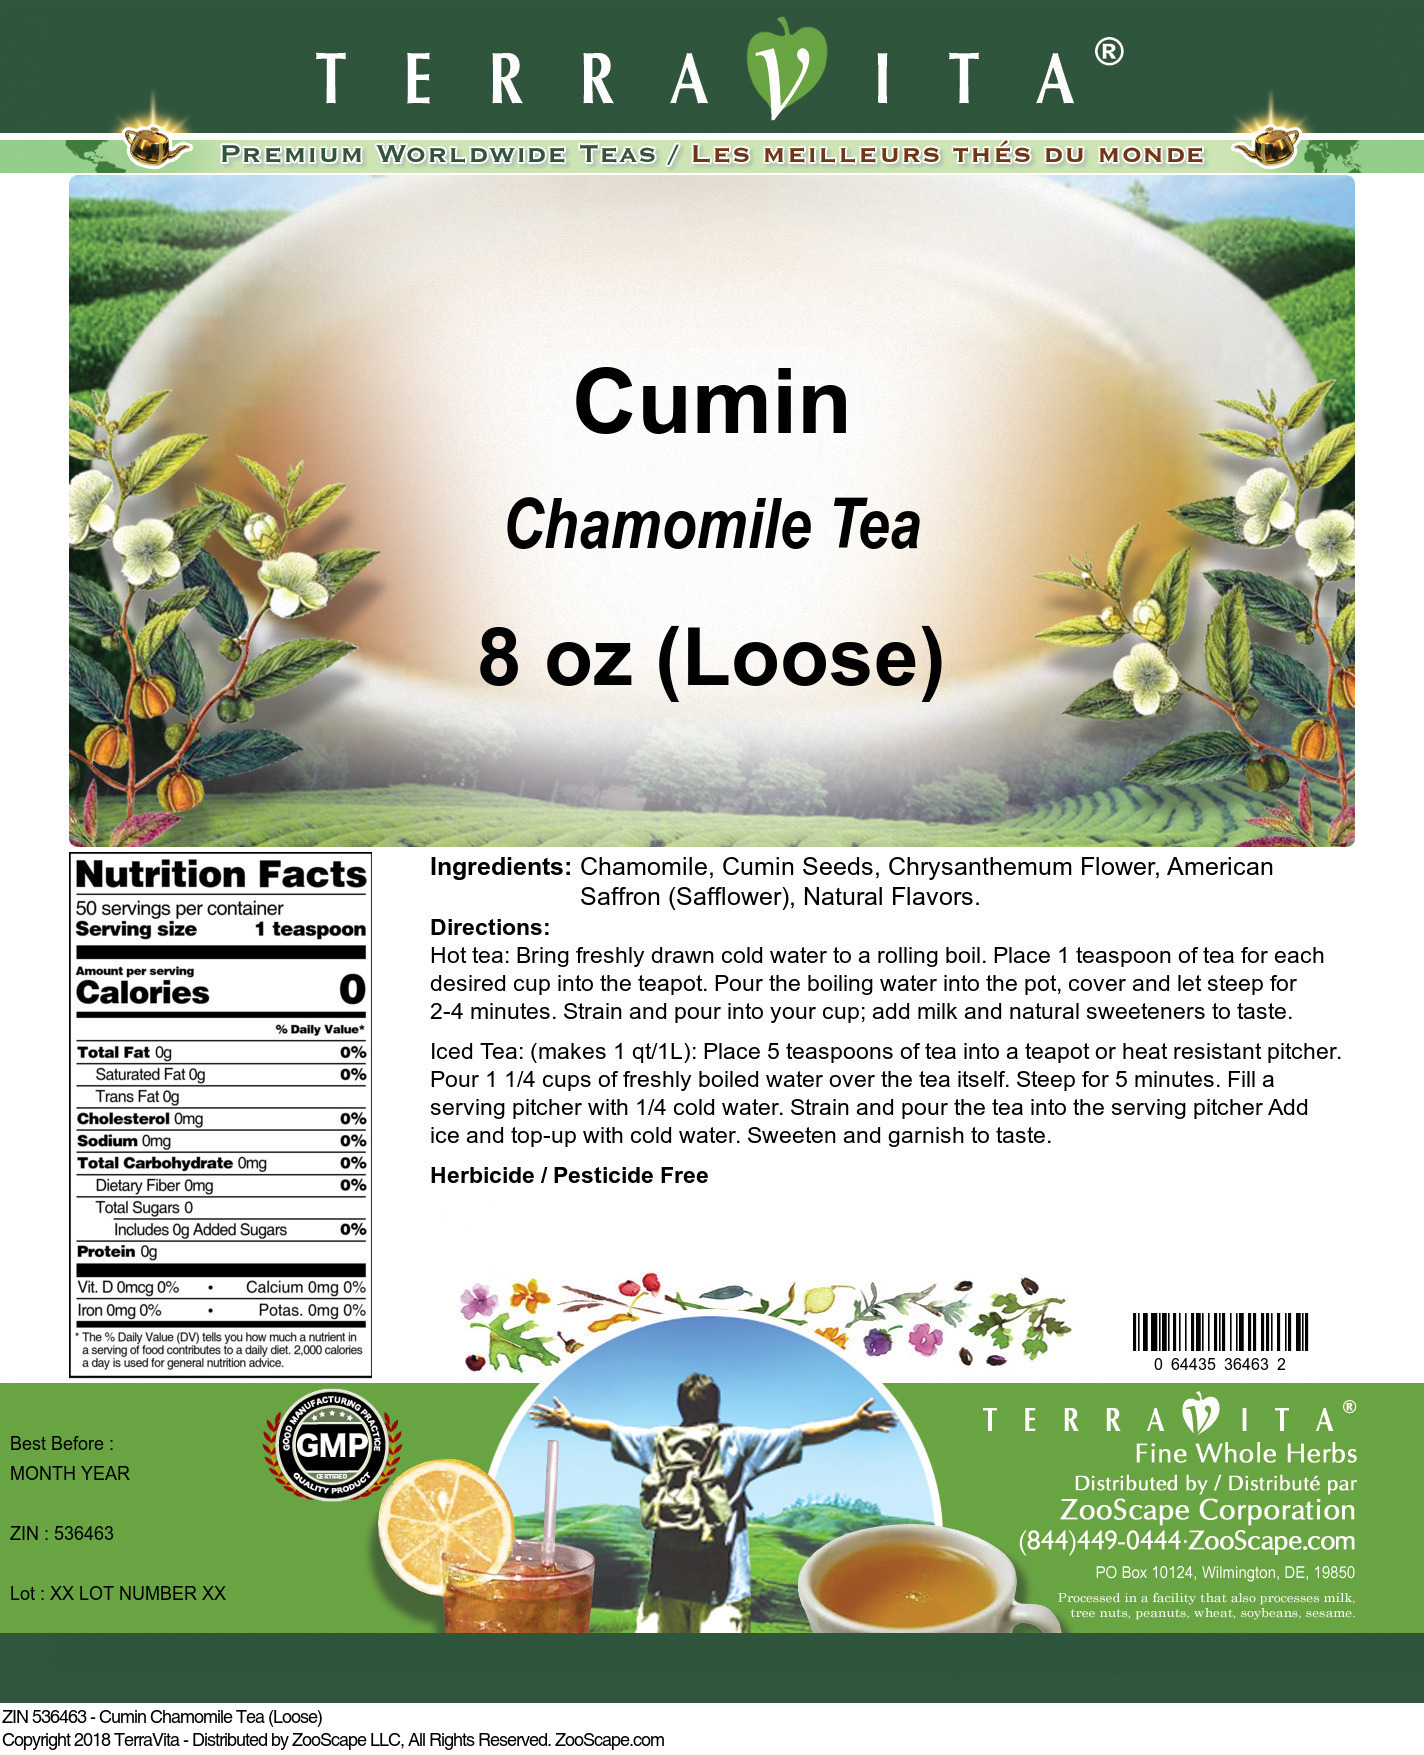 Cumin Chamomile Tea (Loose) - Label